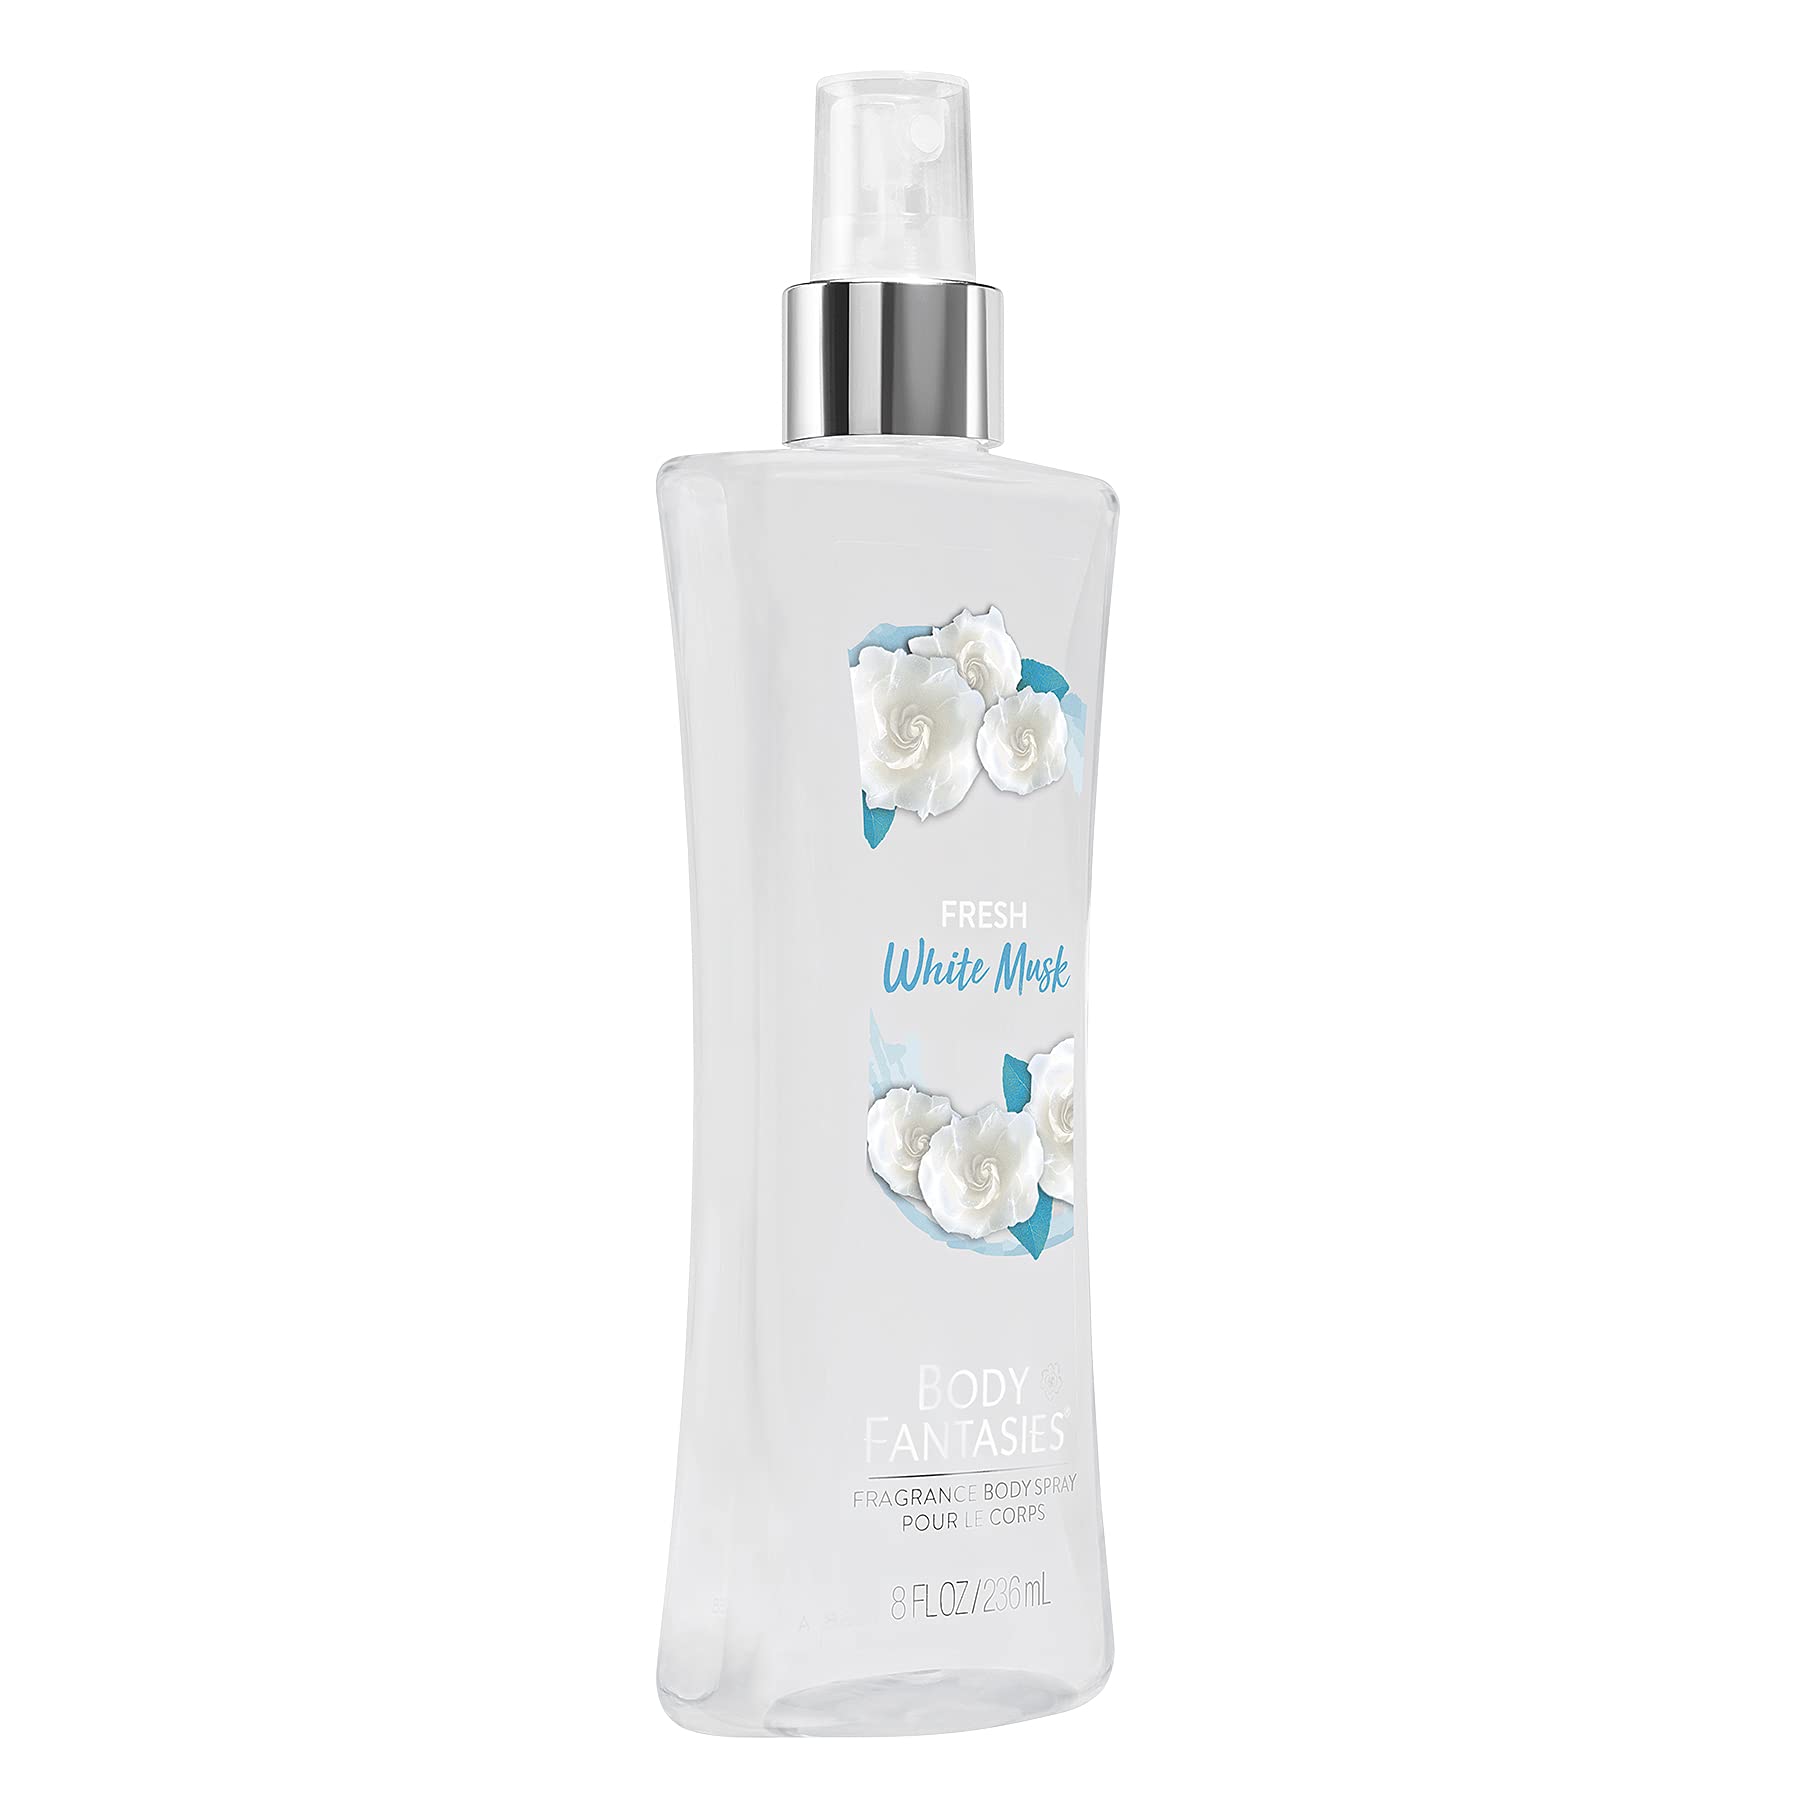 Body Fantasies Signature Fragrance Body Spray, Fresh White Musk, 8 Fluid Ounce